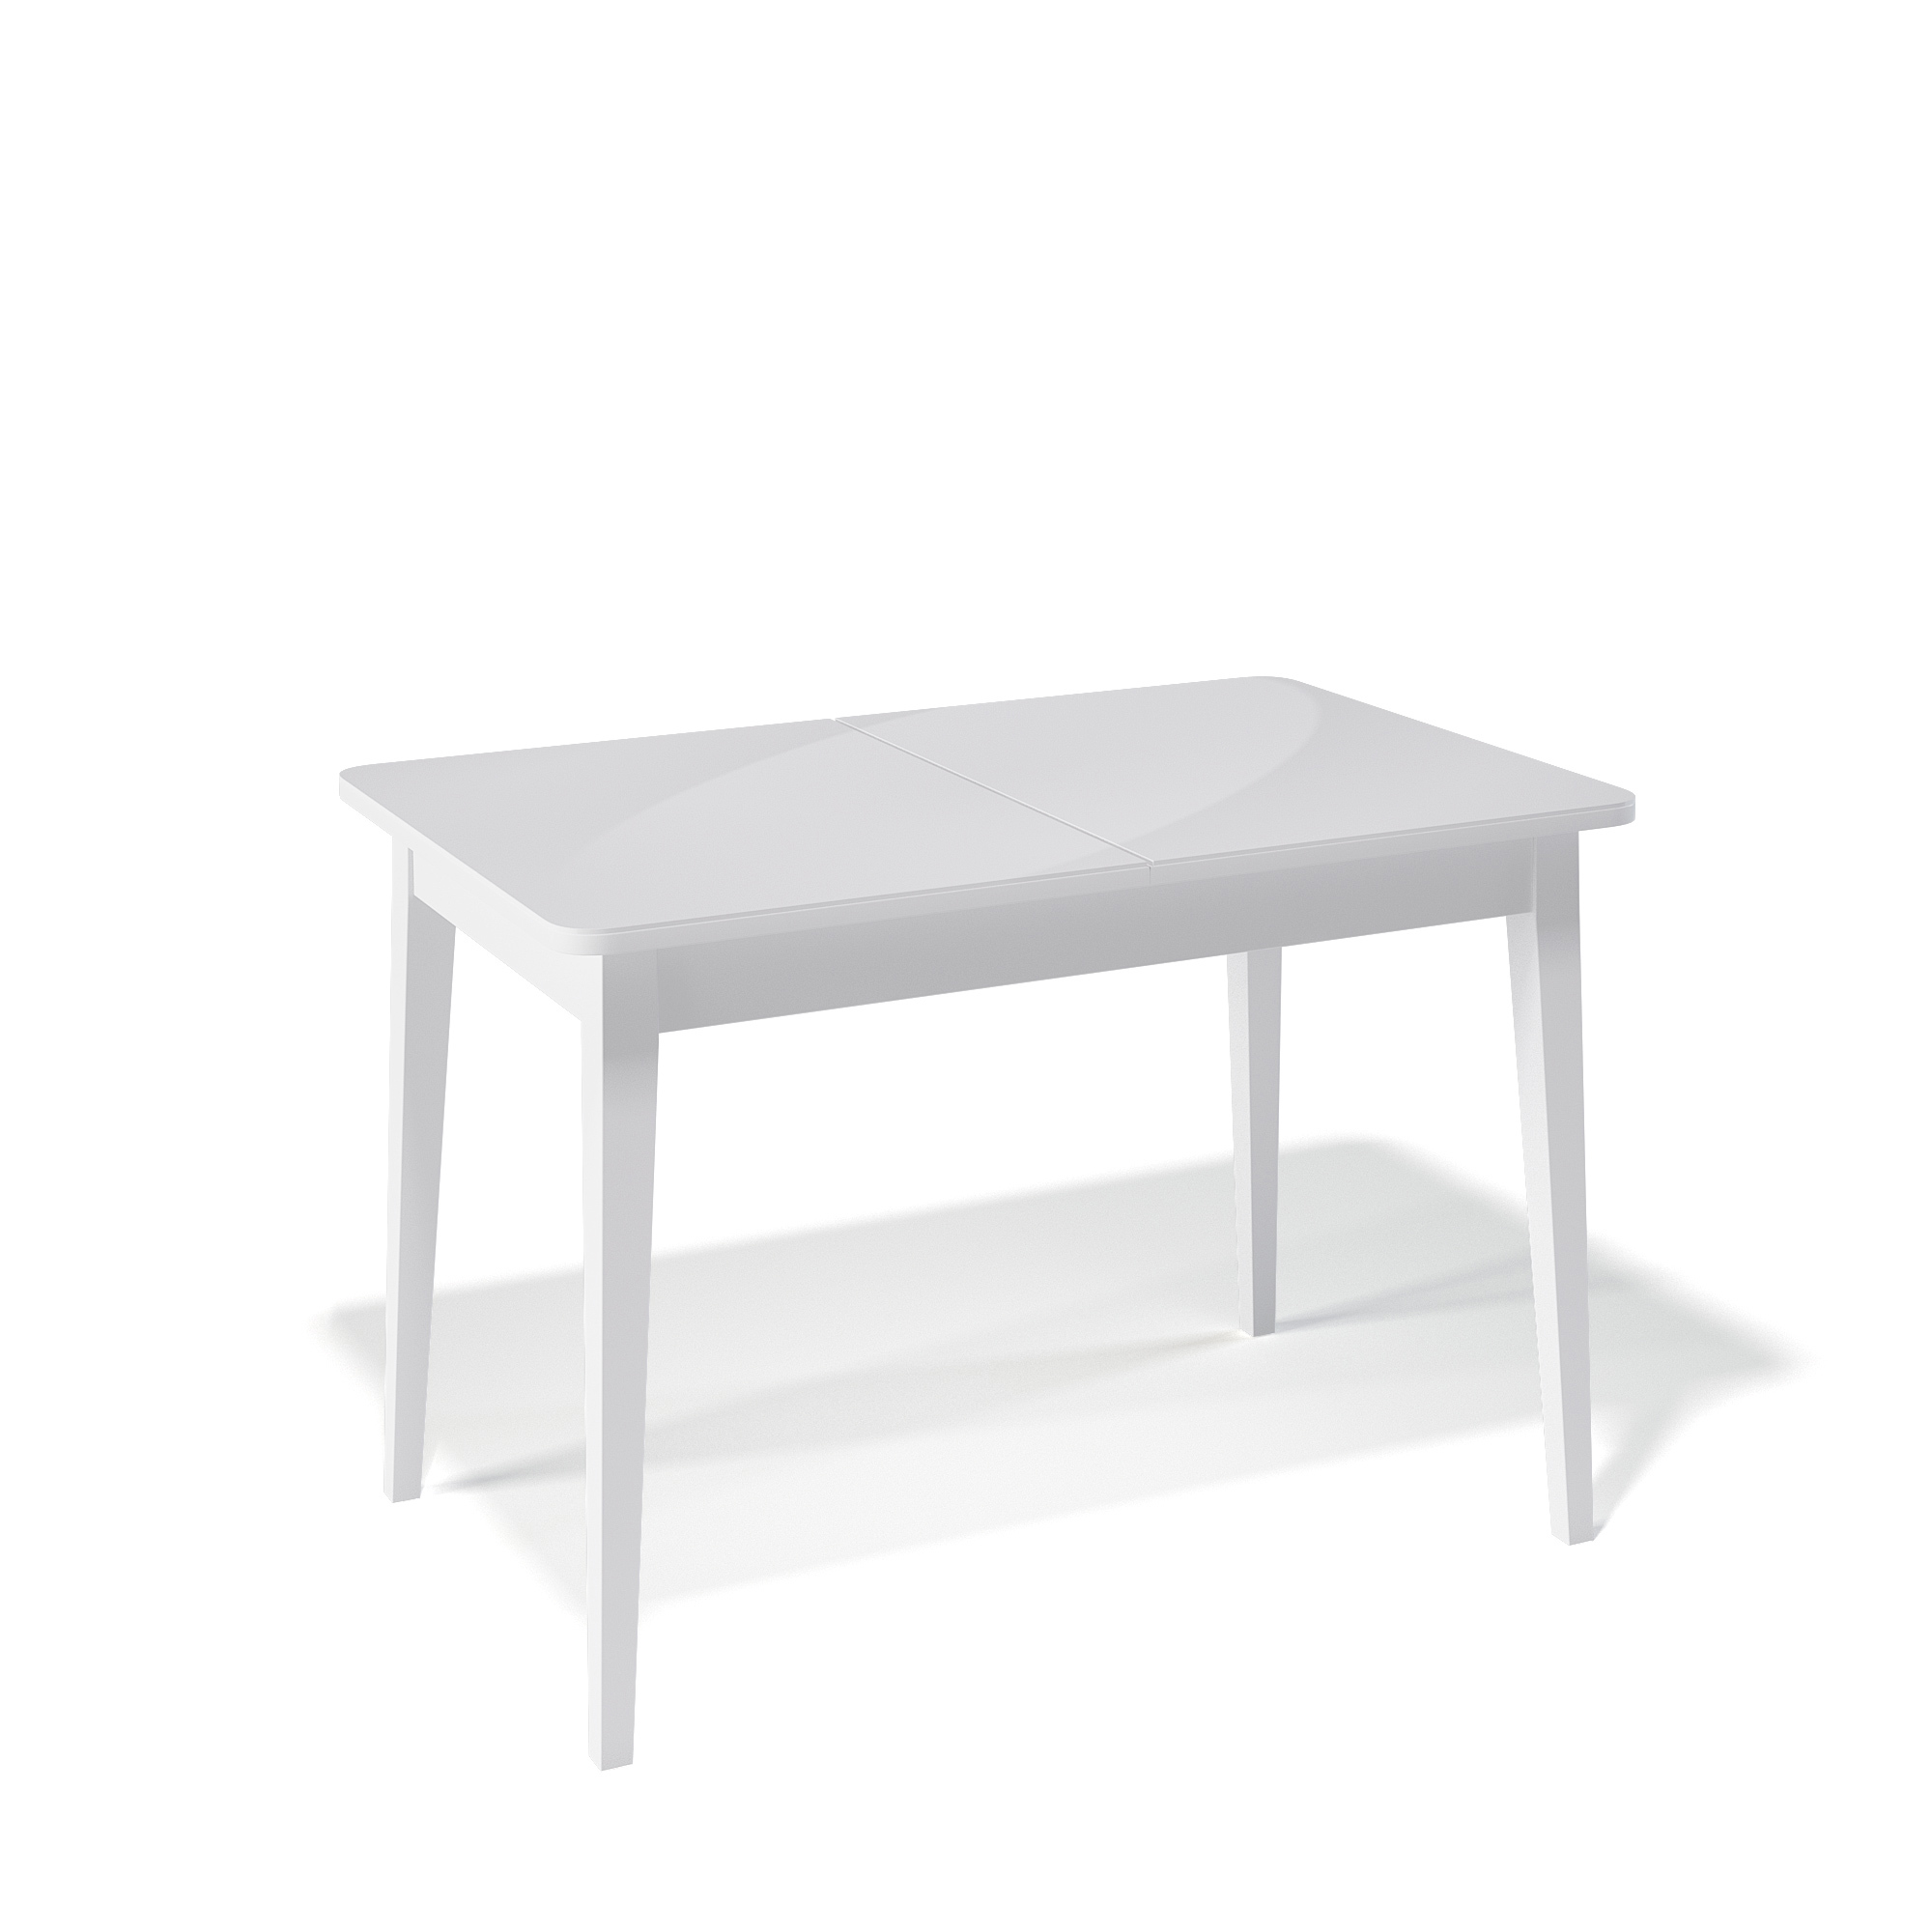 91053993 Кухонный стол прямоугольный 330760 110-150x110x76 см ЛДСП цвет белый M/C STLM-0459638 KENNER